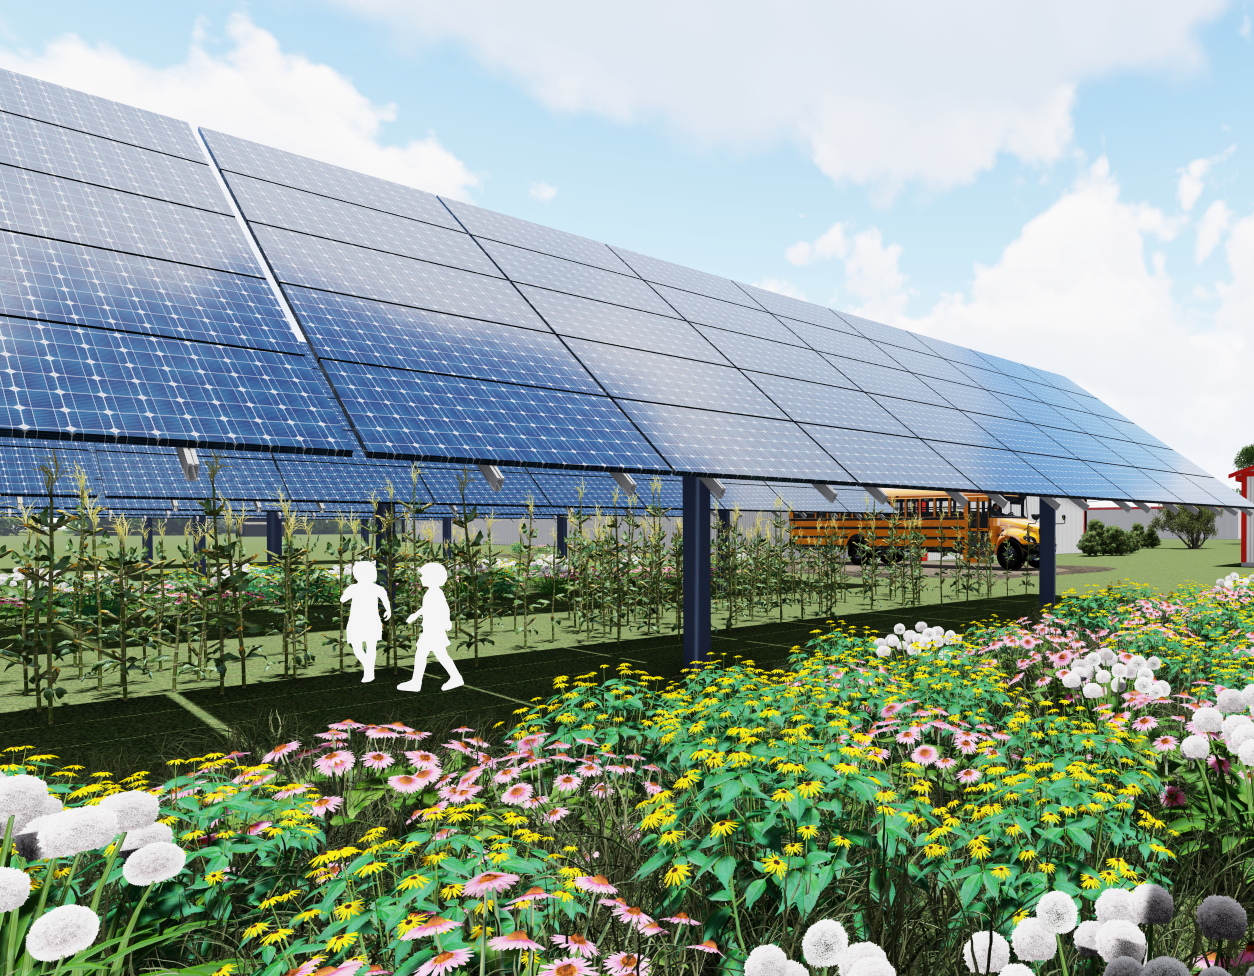 Agrivoltaics: Where Solar And Agriculture Meet